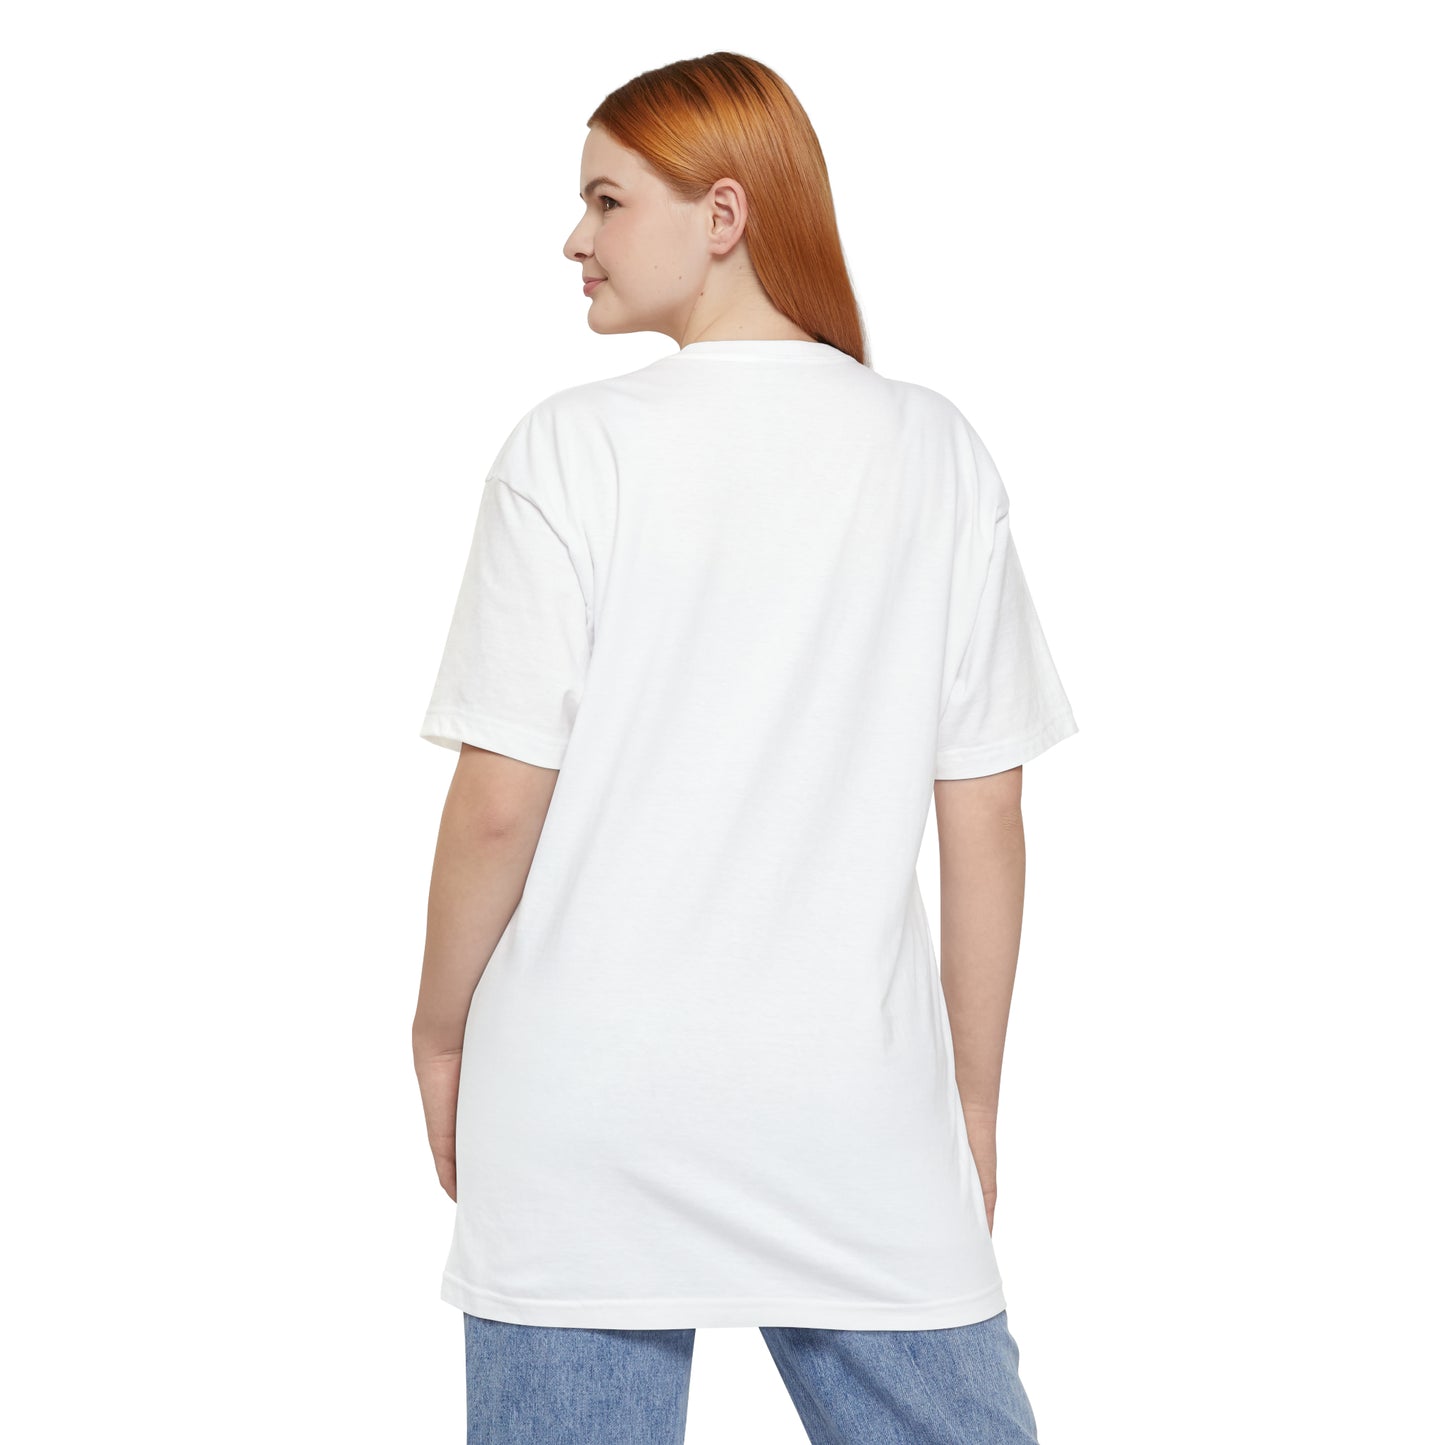 King Tuck BIG & TALL Unisex Tall Beefy-T® T-Shirt